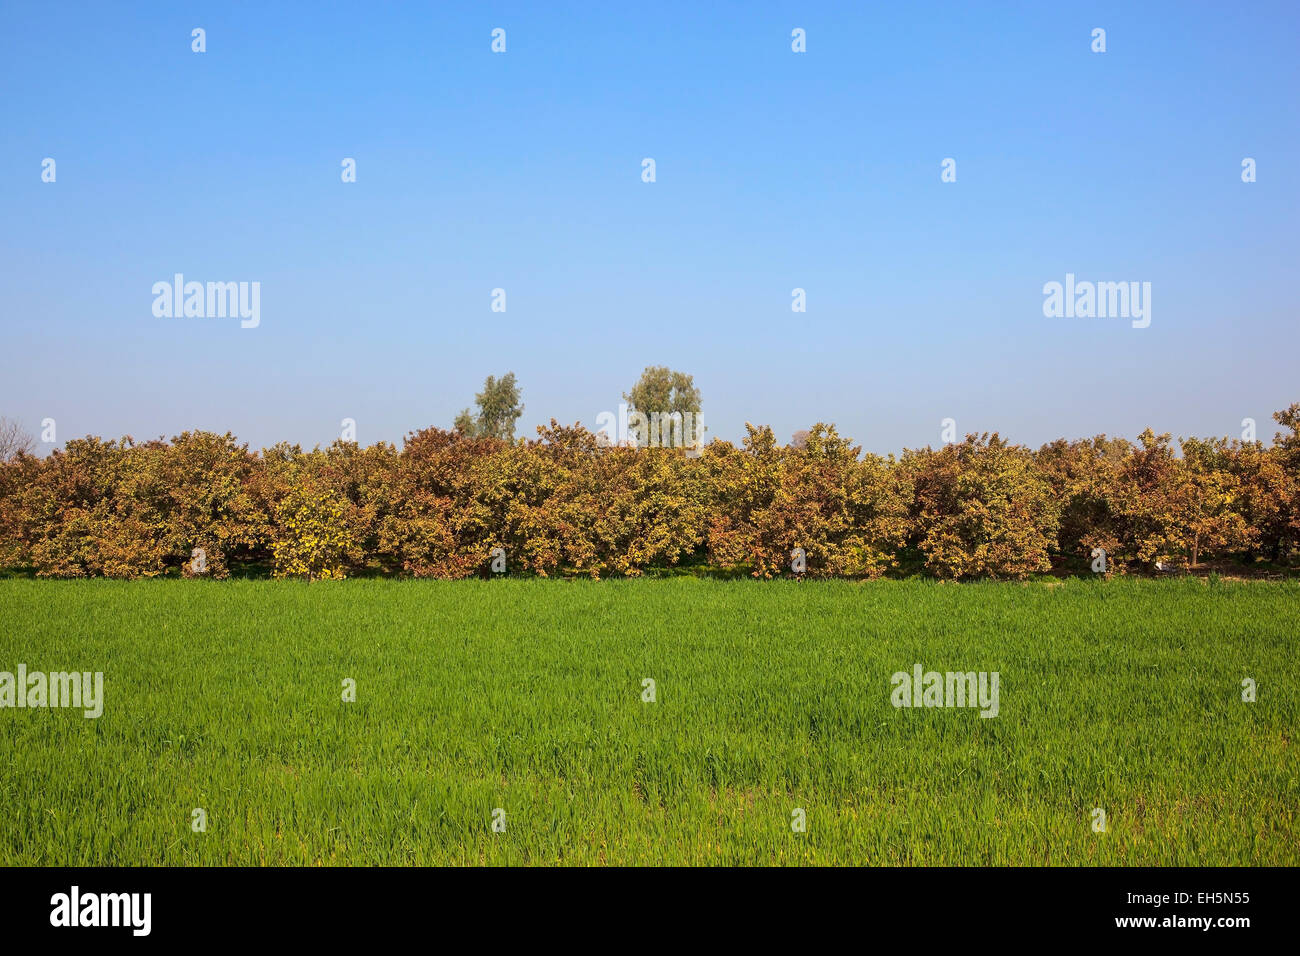 Punjabi Landschaft mit grünen Weizen und bunten Guave Bäume unter blauem Himmel Stockfoto